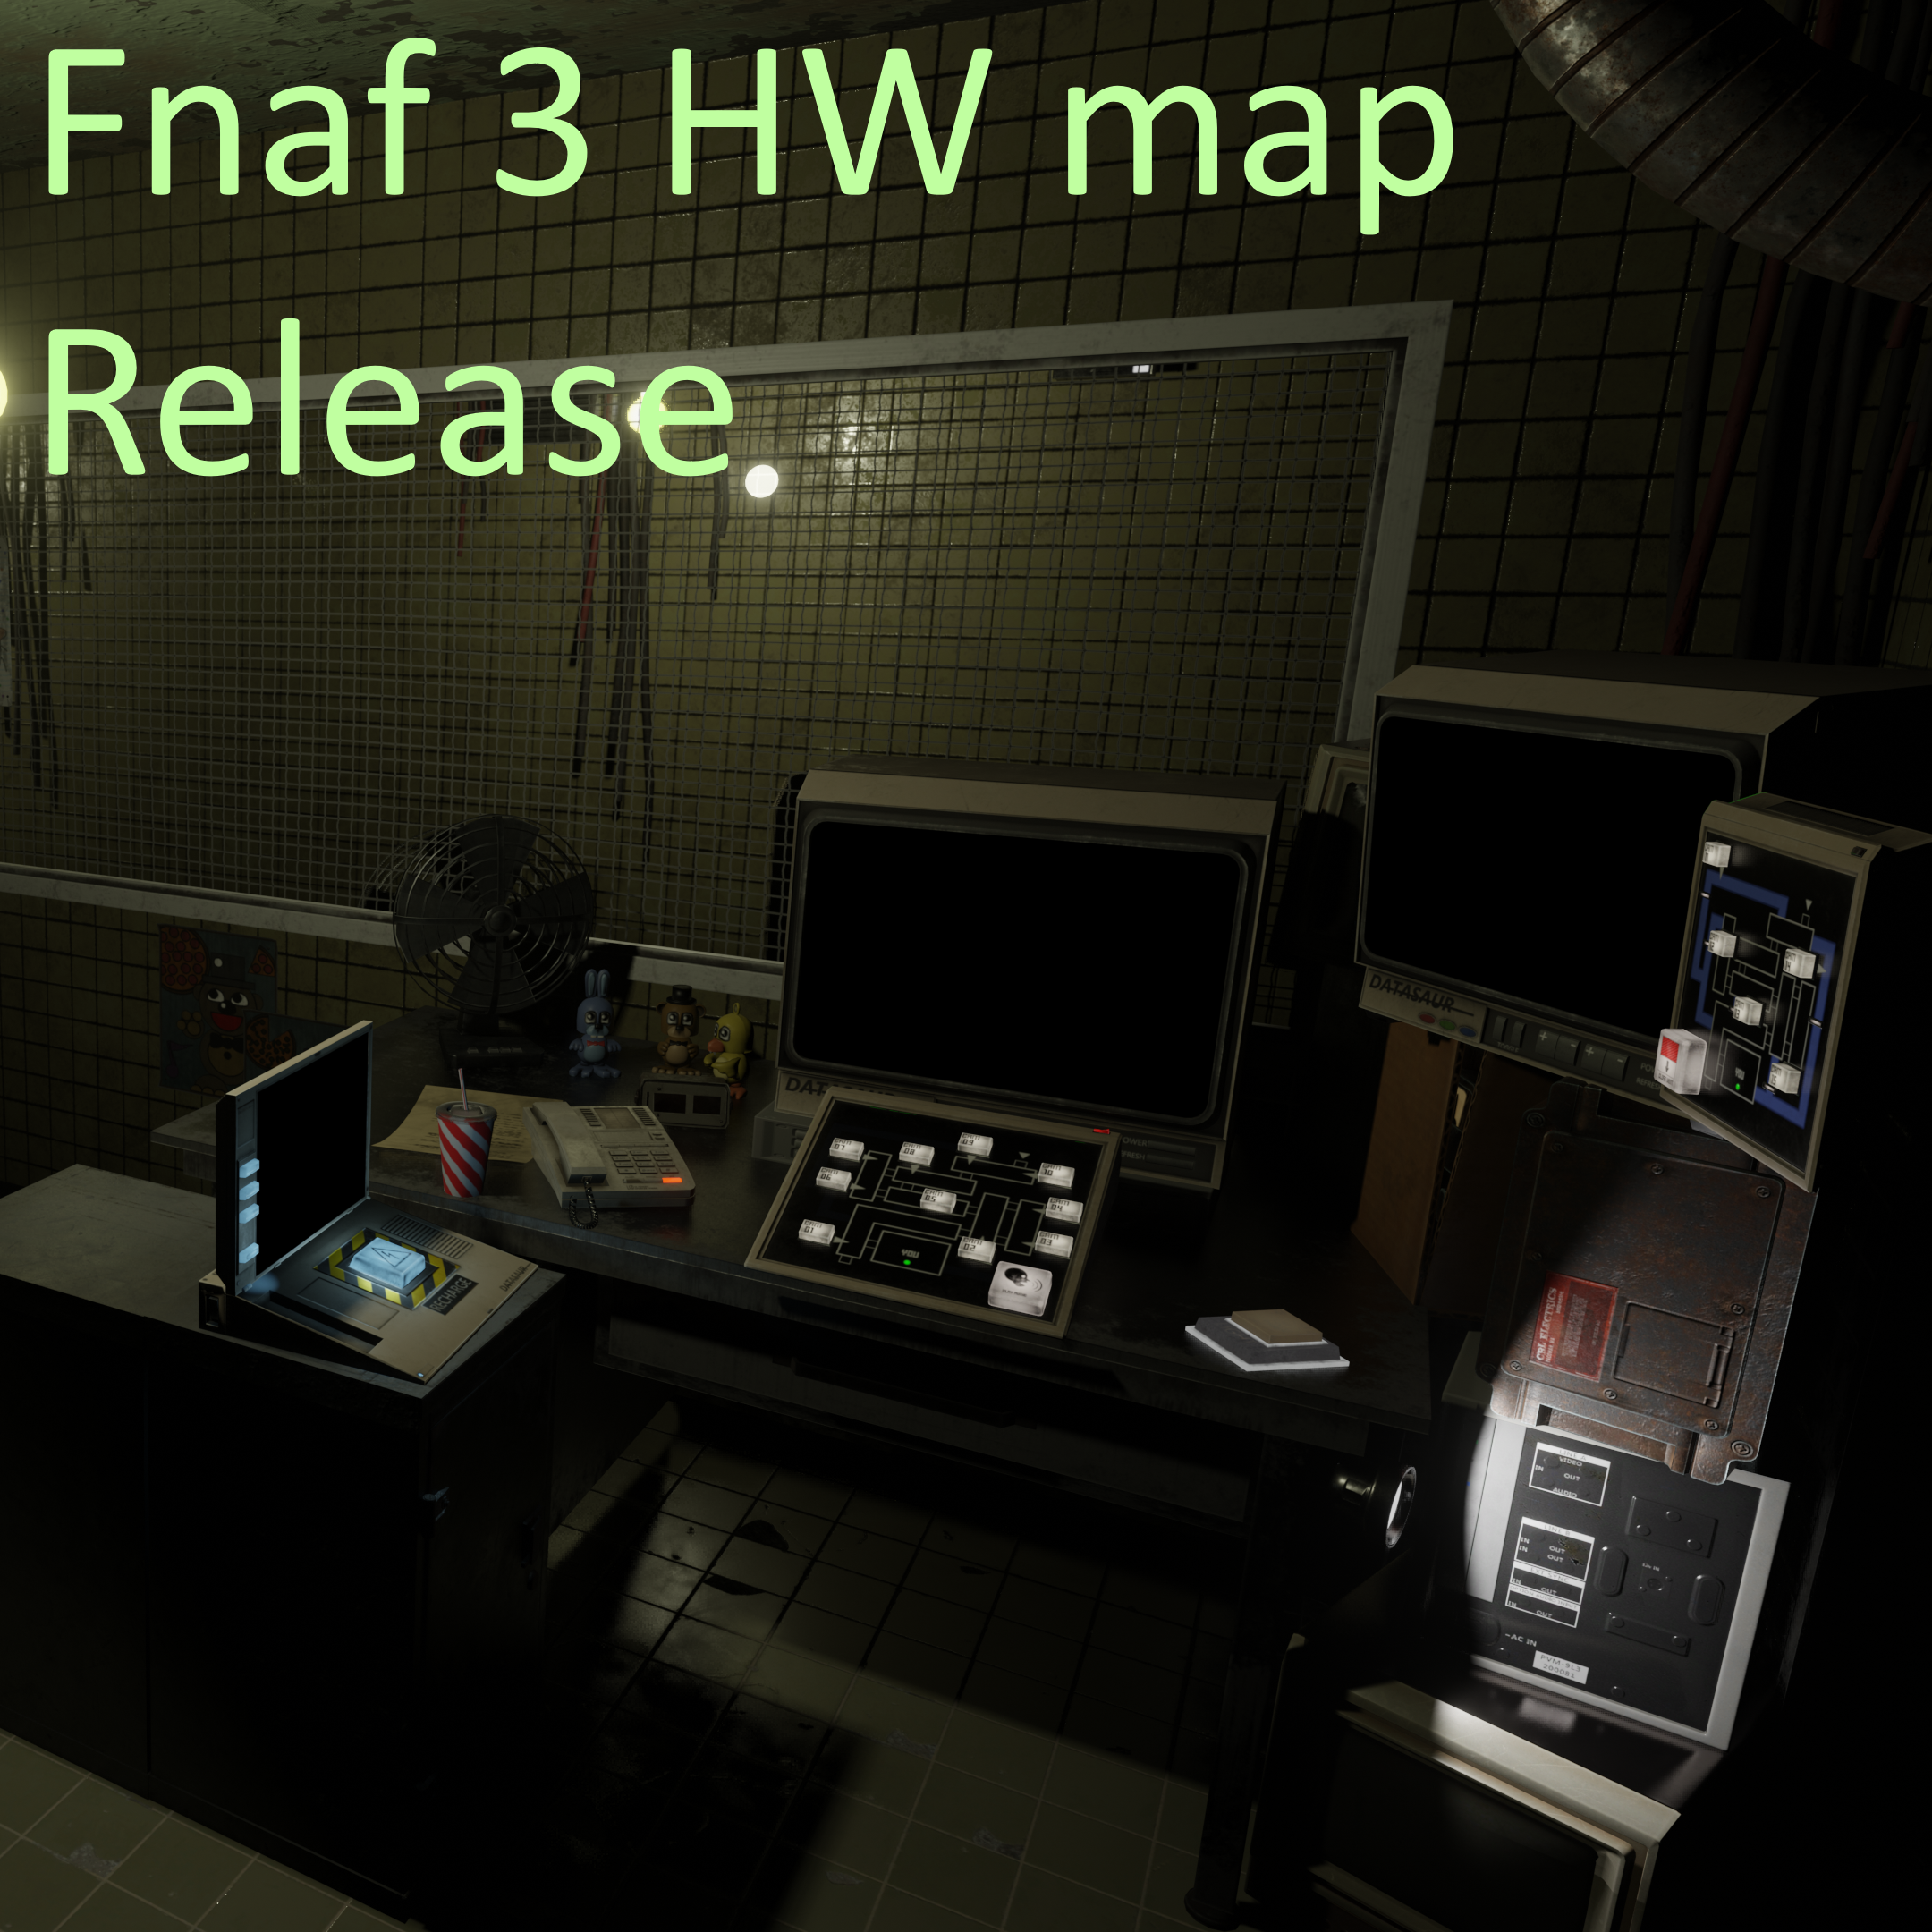 FNaF 1 Map V4 Blender Release by Spinofan on DeviantArt